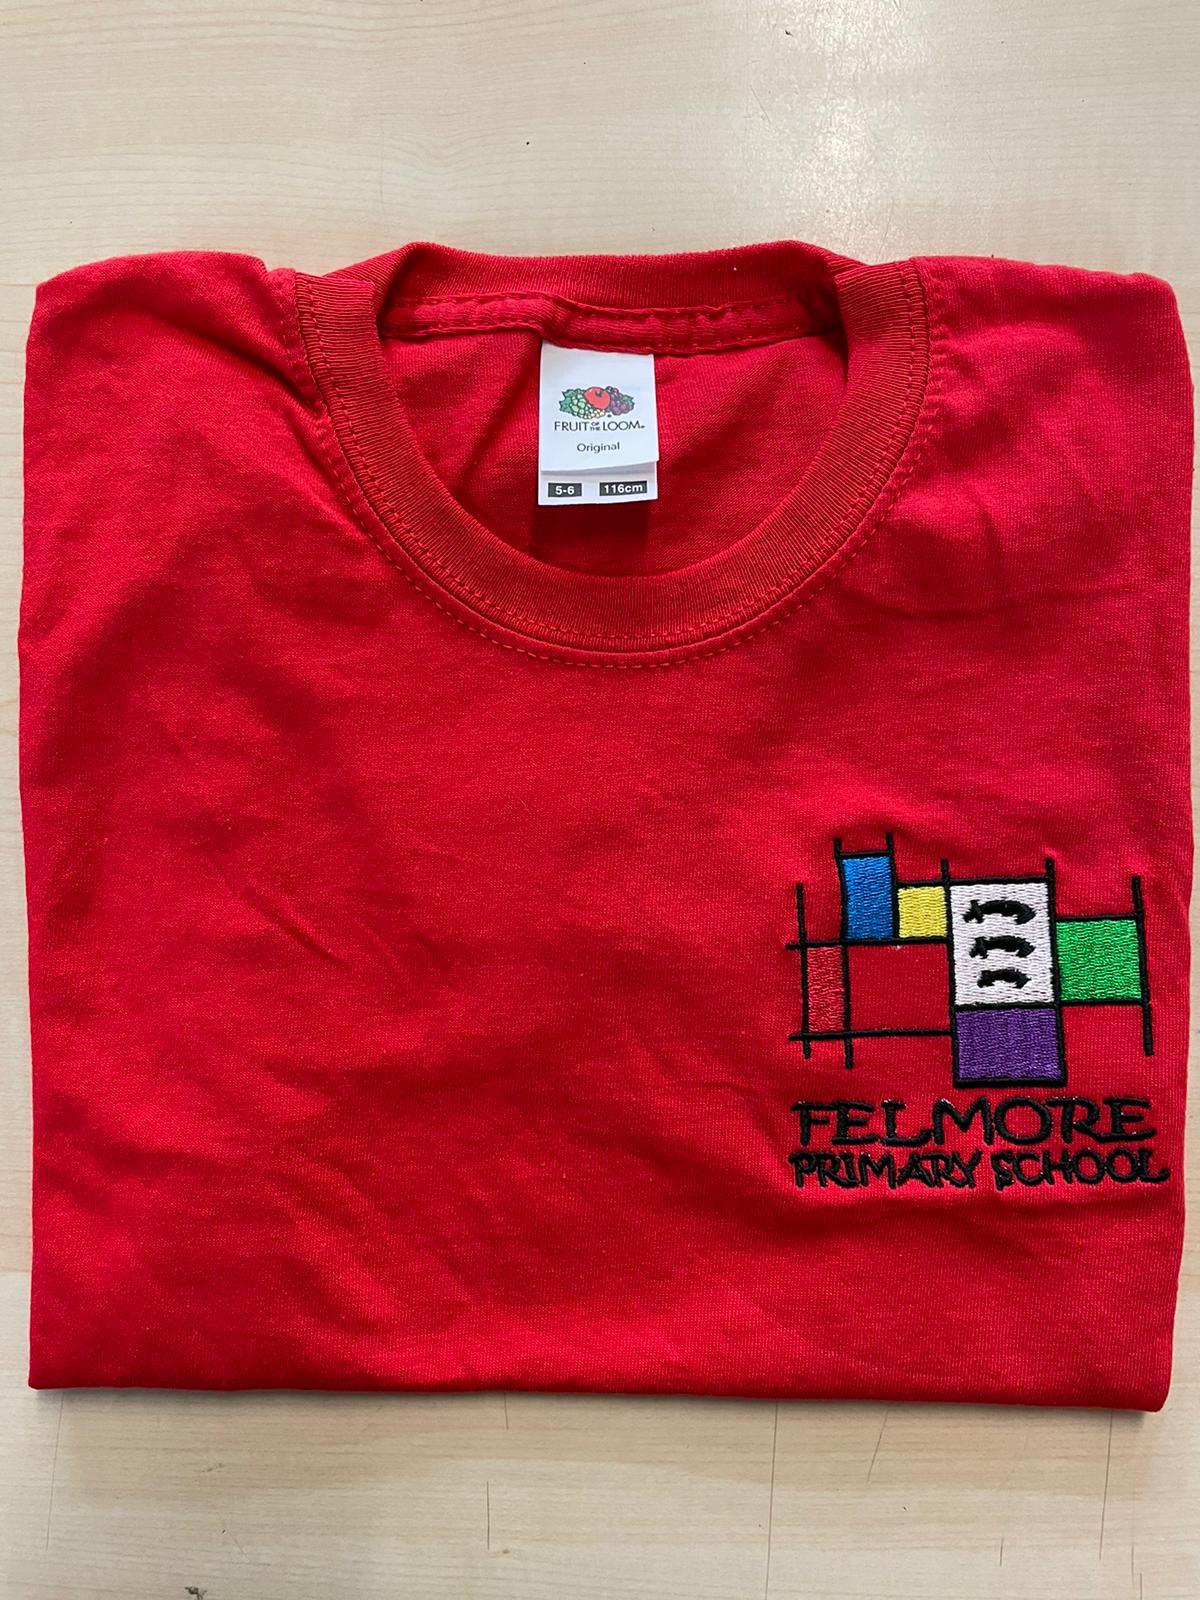 Felmore Primary School - Red T-Shirt with School Logo - Schoolwear Centres | School Uniform Centres